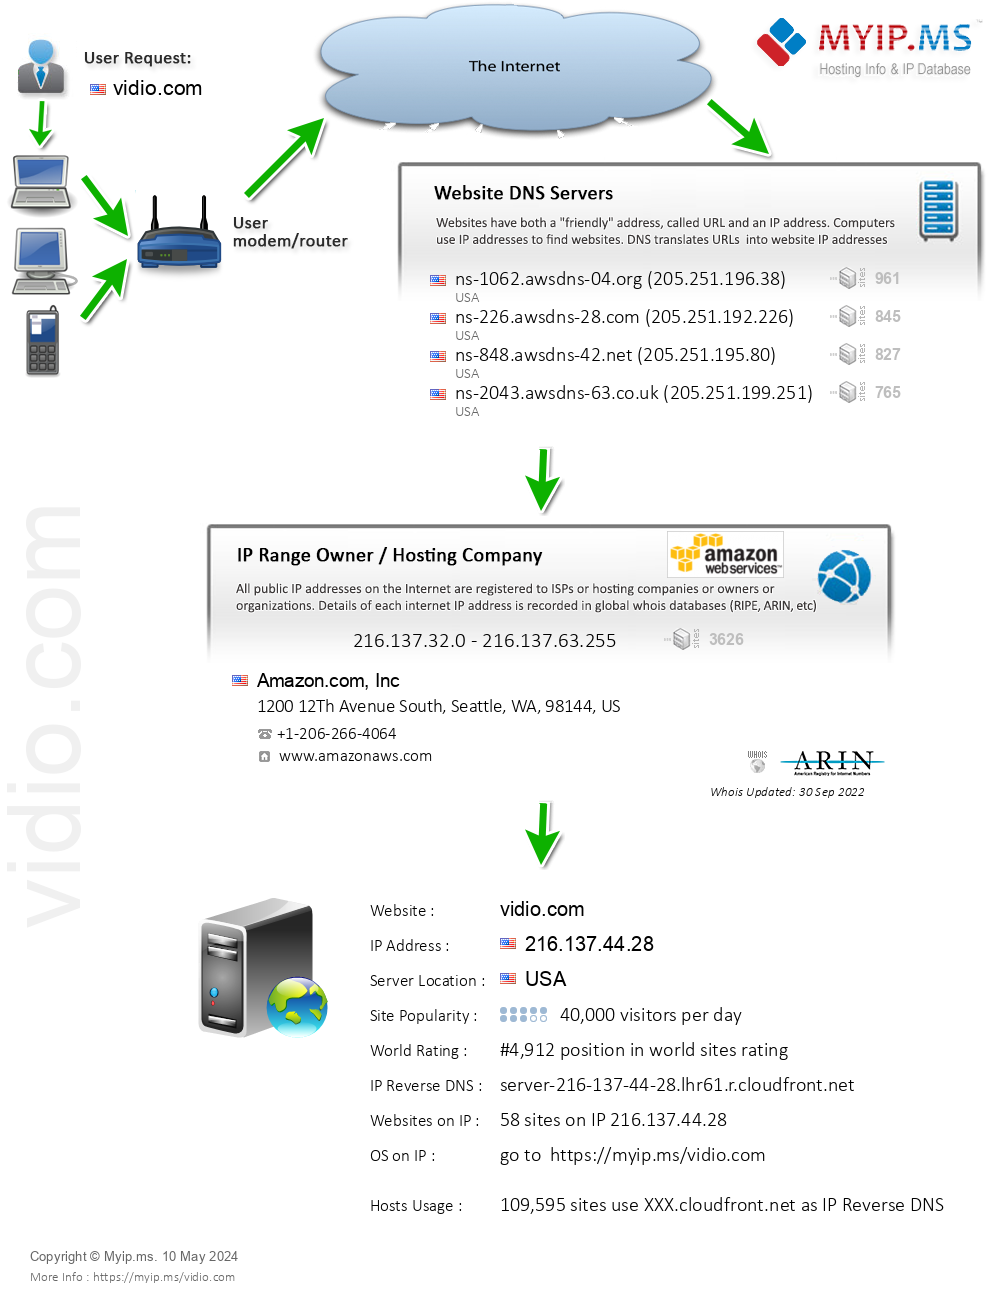 Vidio.com - Website Hosting Visual IP Diagram